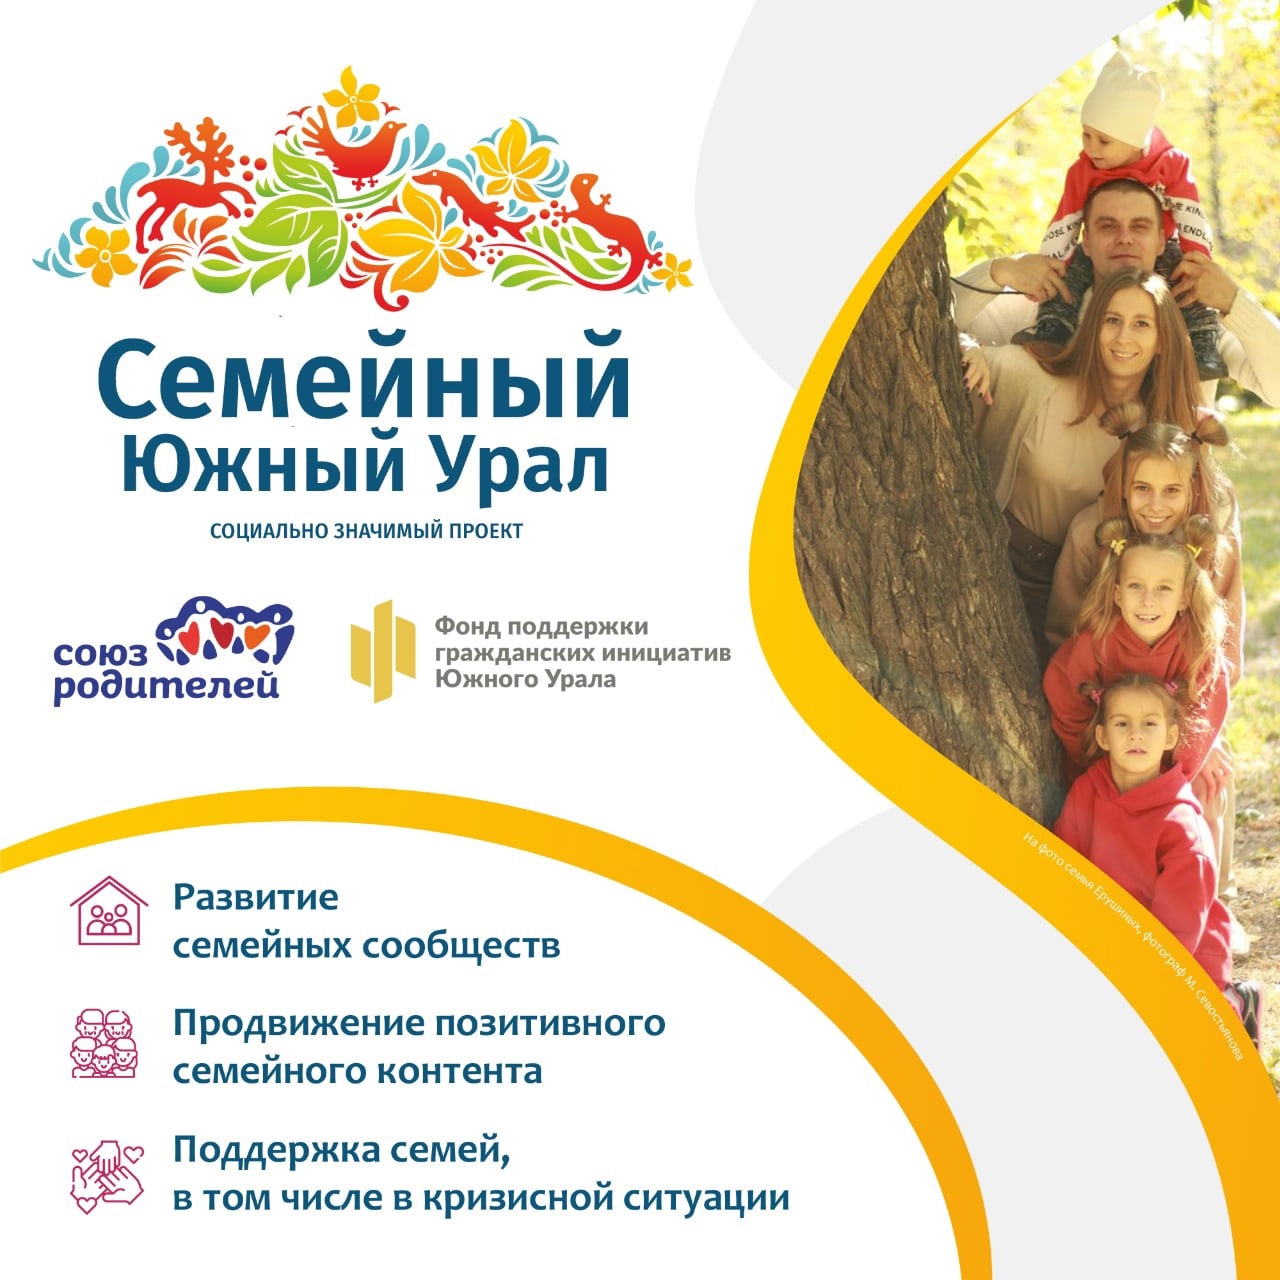 «Семейный Южный Урал» — новый проект АНО «Союз родителей»